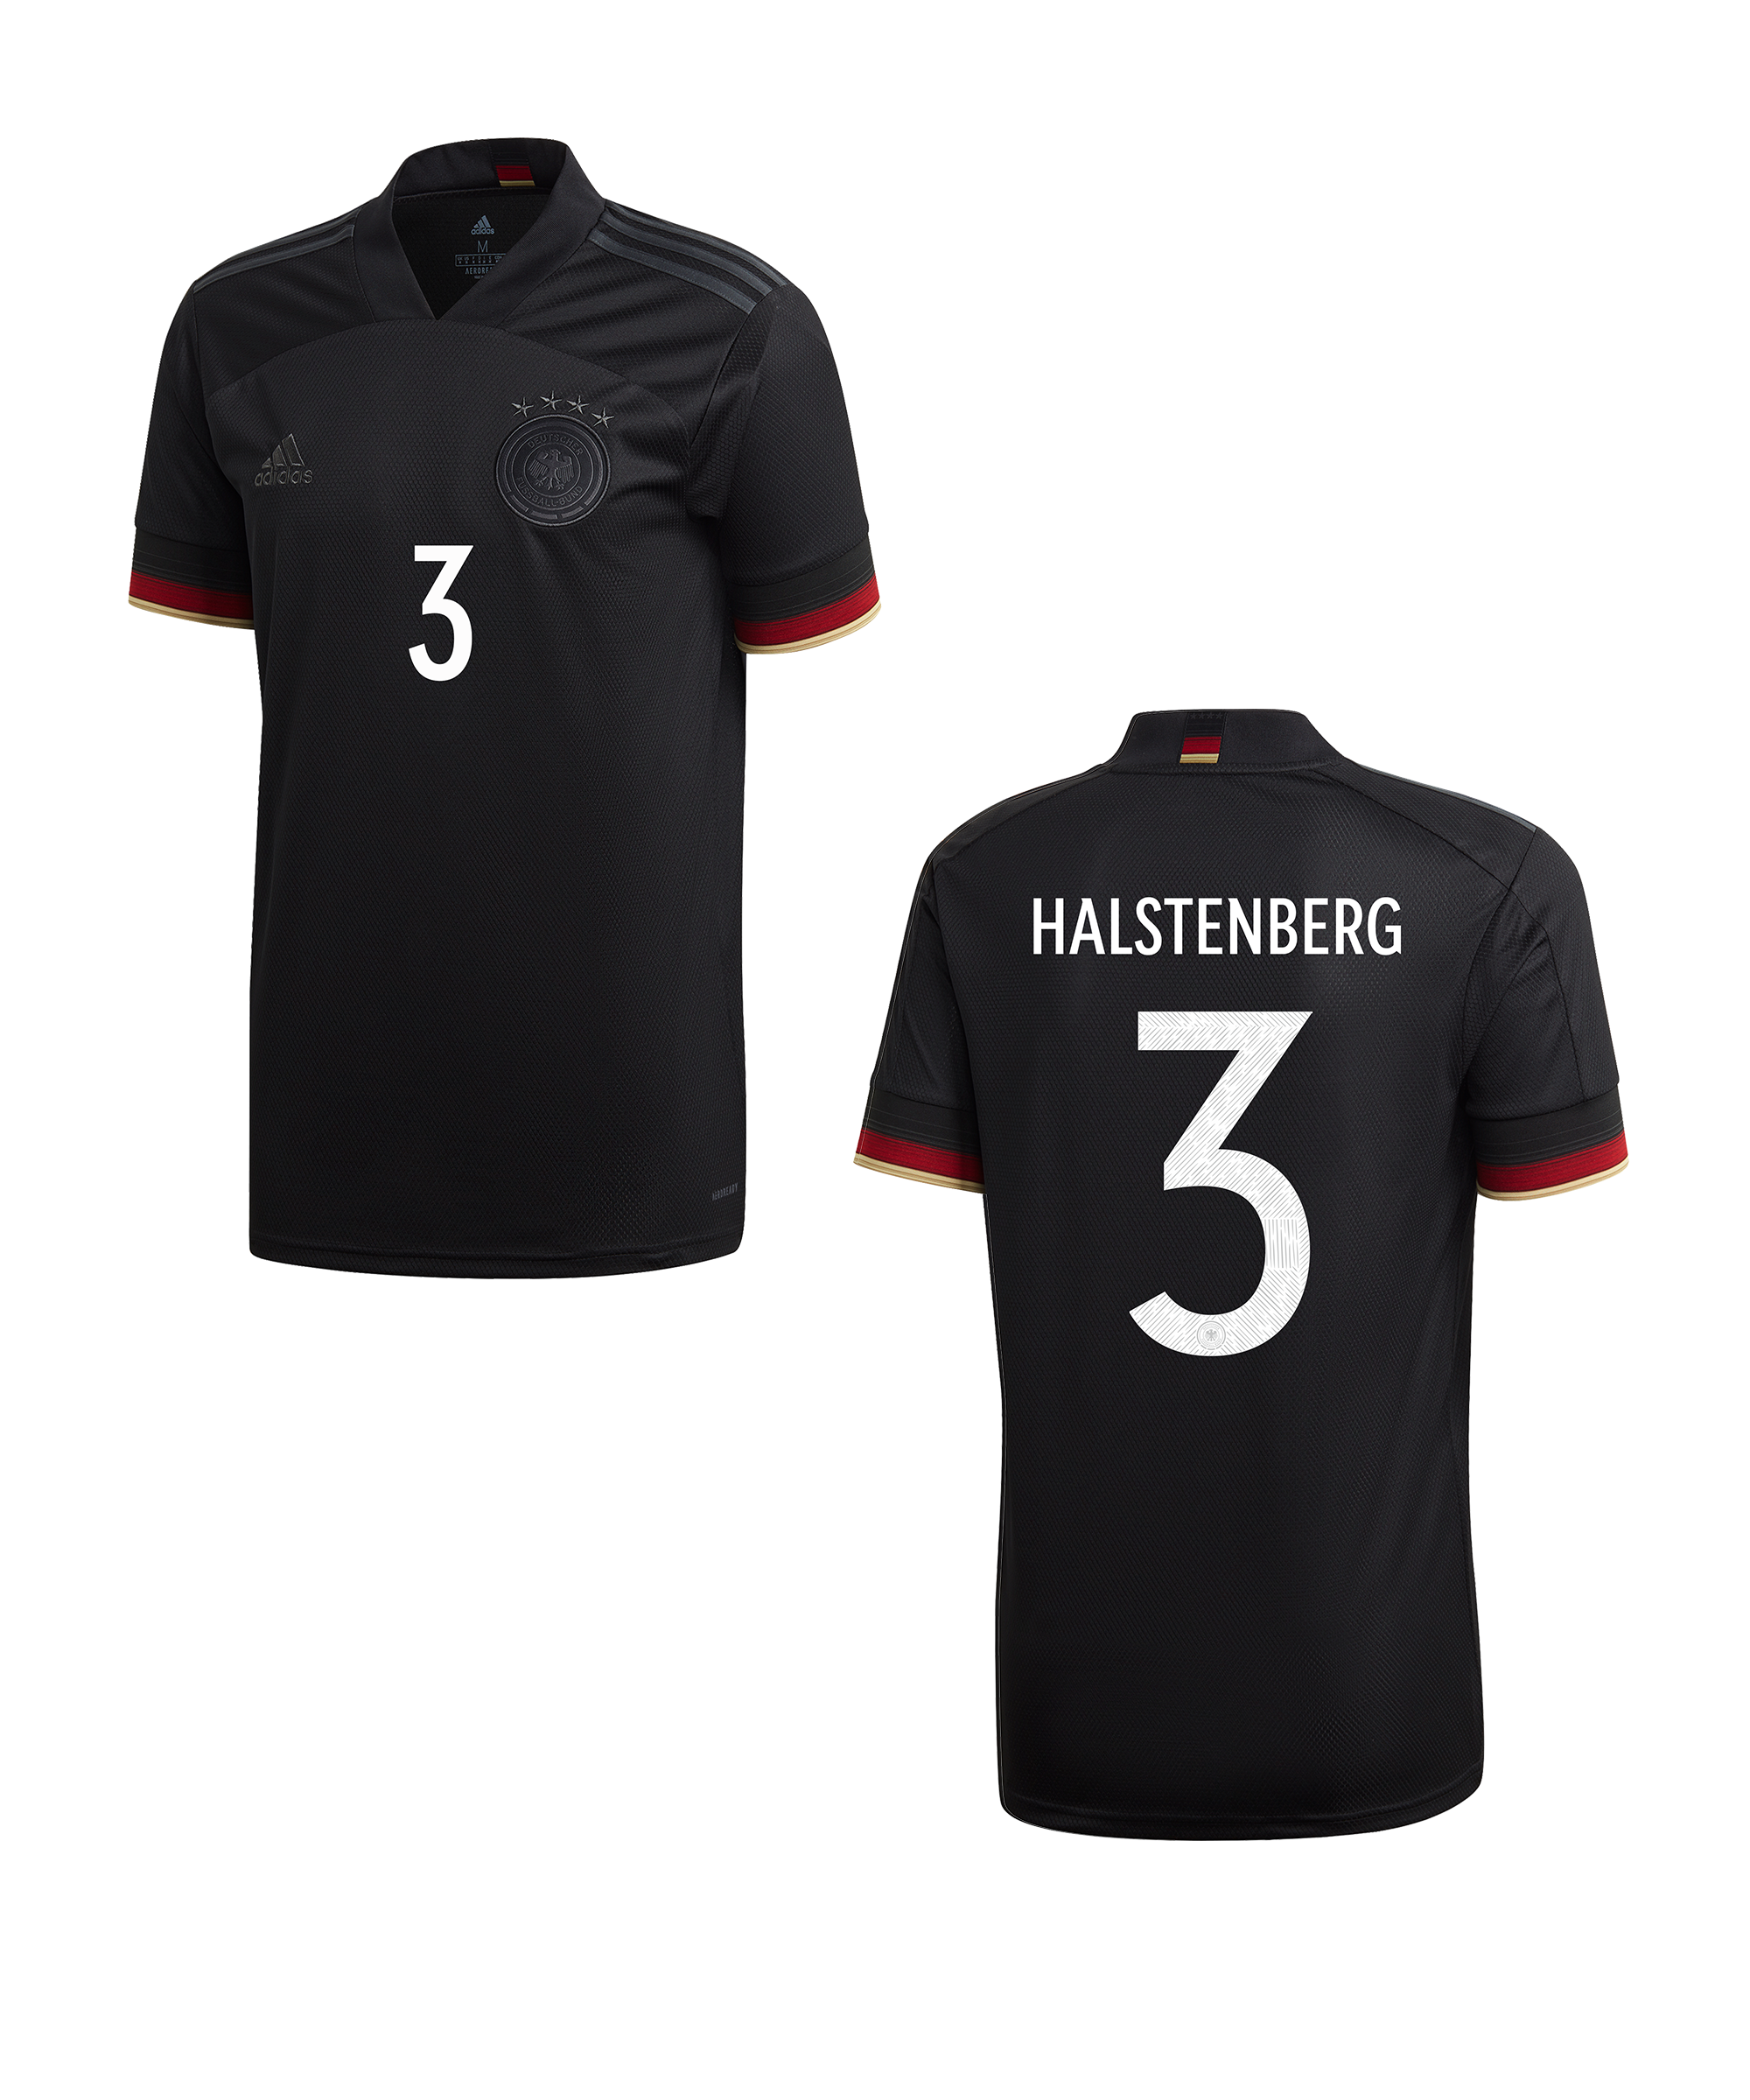 Dres adidas DFB Deutschland t Away EM2020 Halstenberg